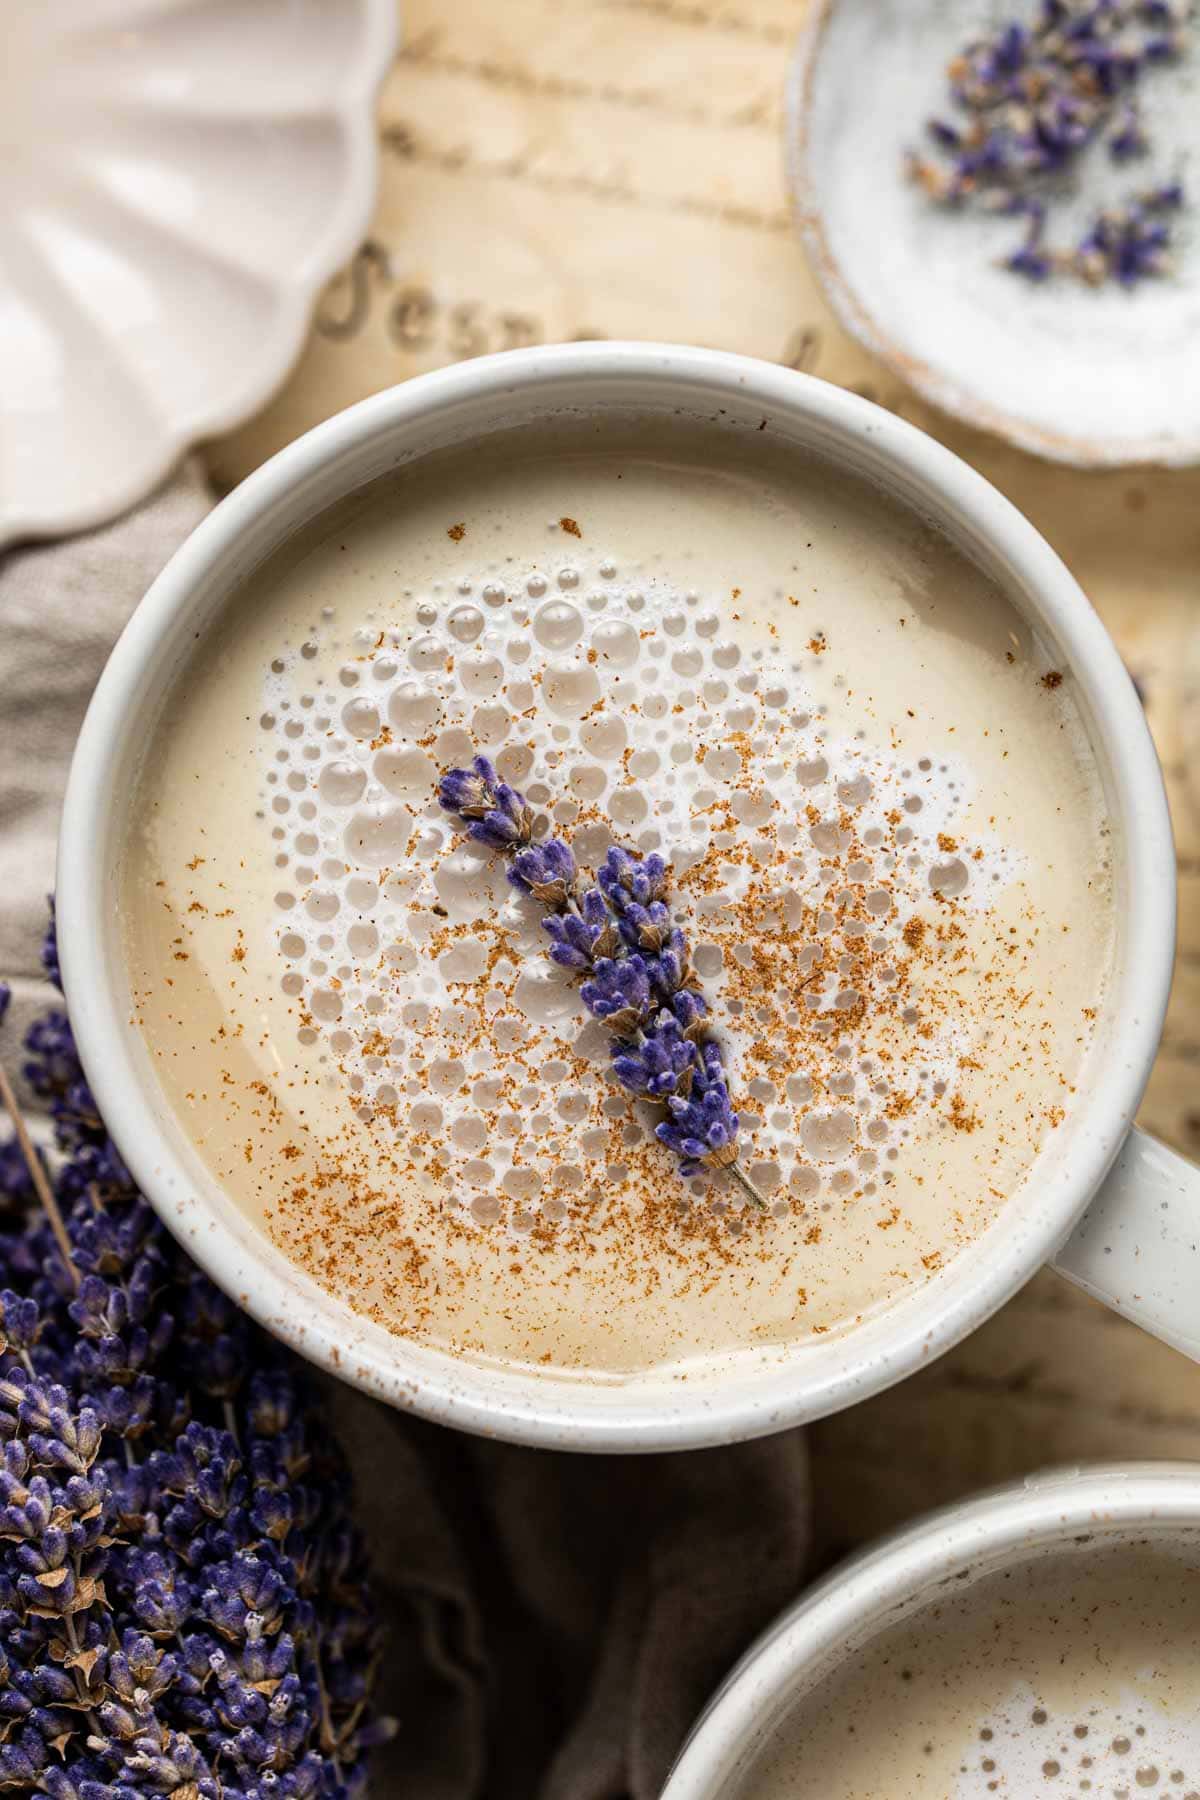 A mug of lavender milk tea.